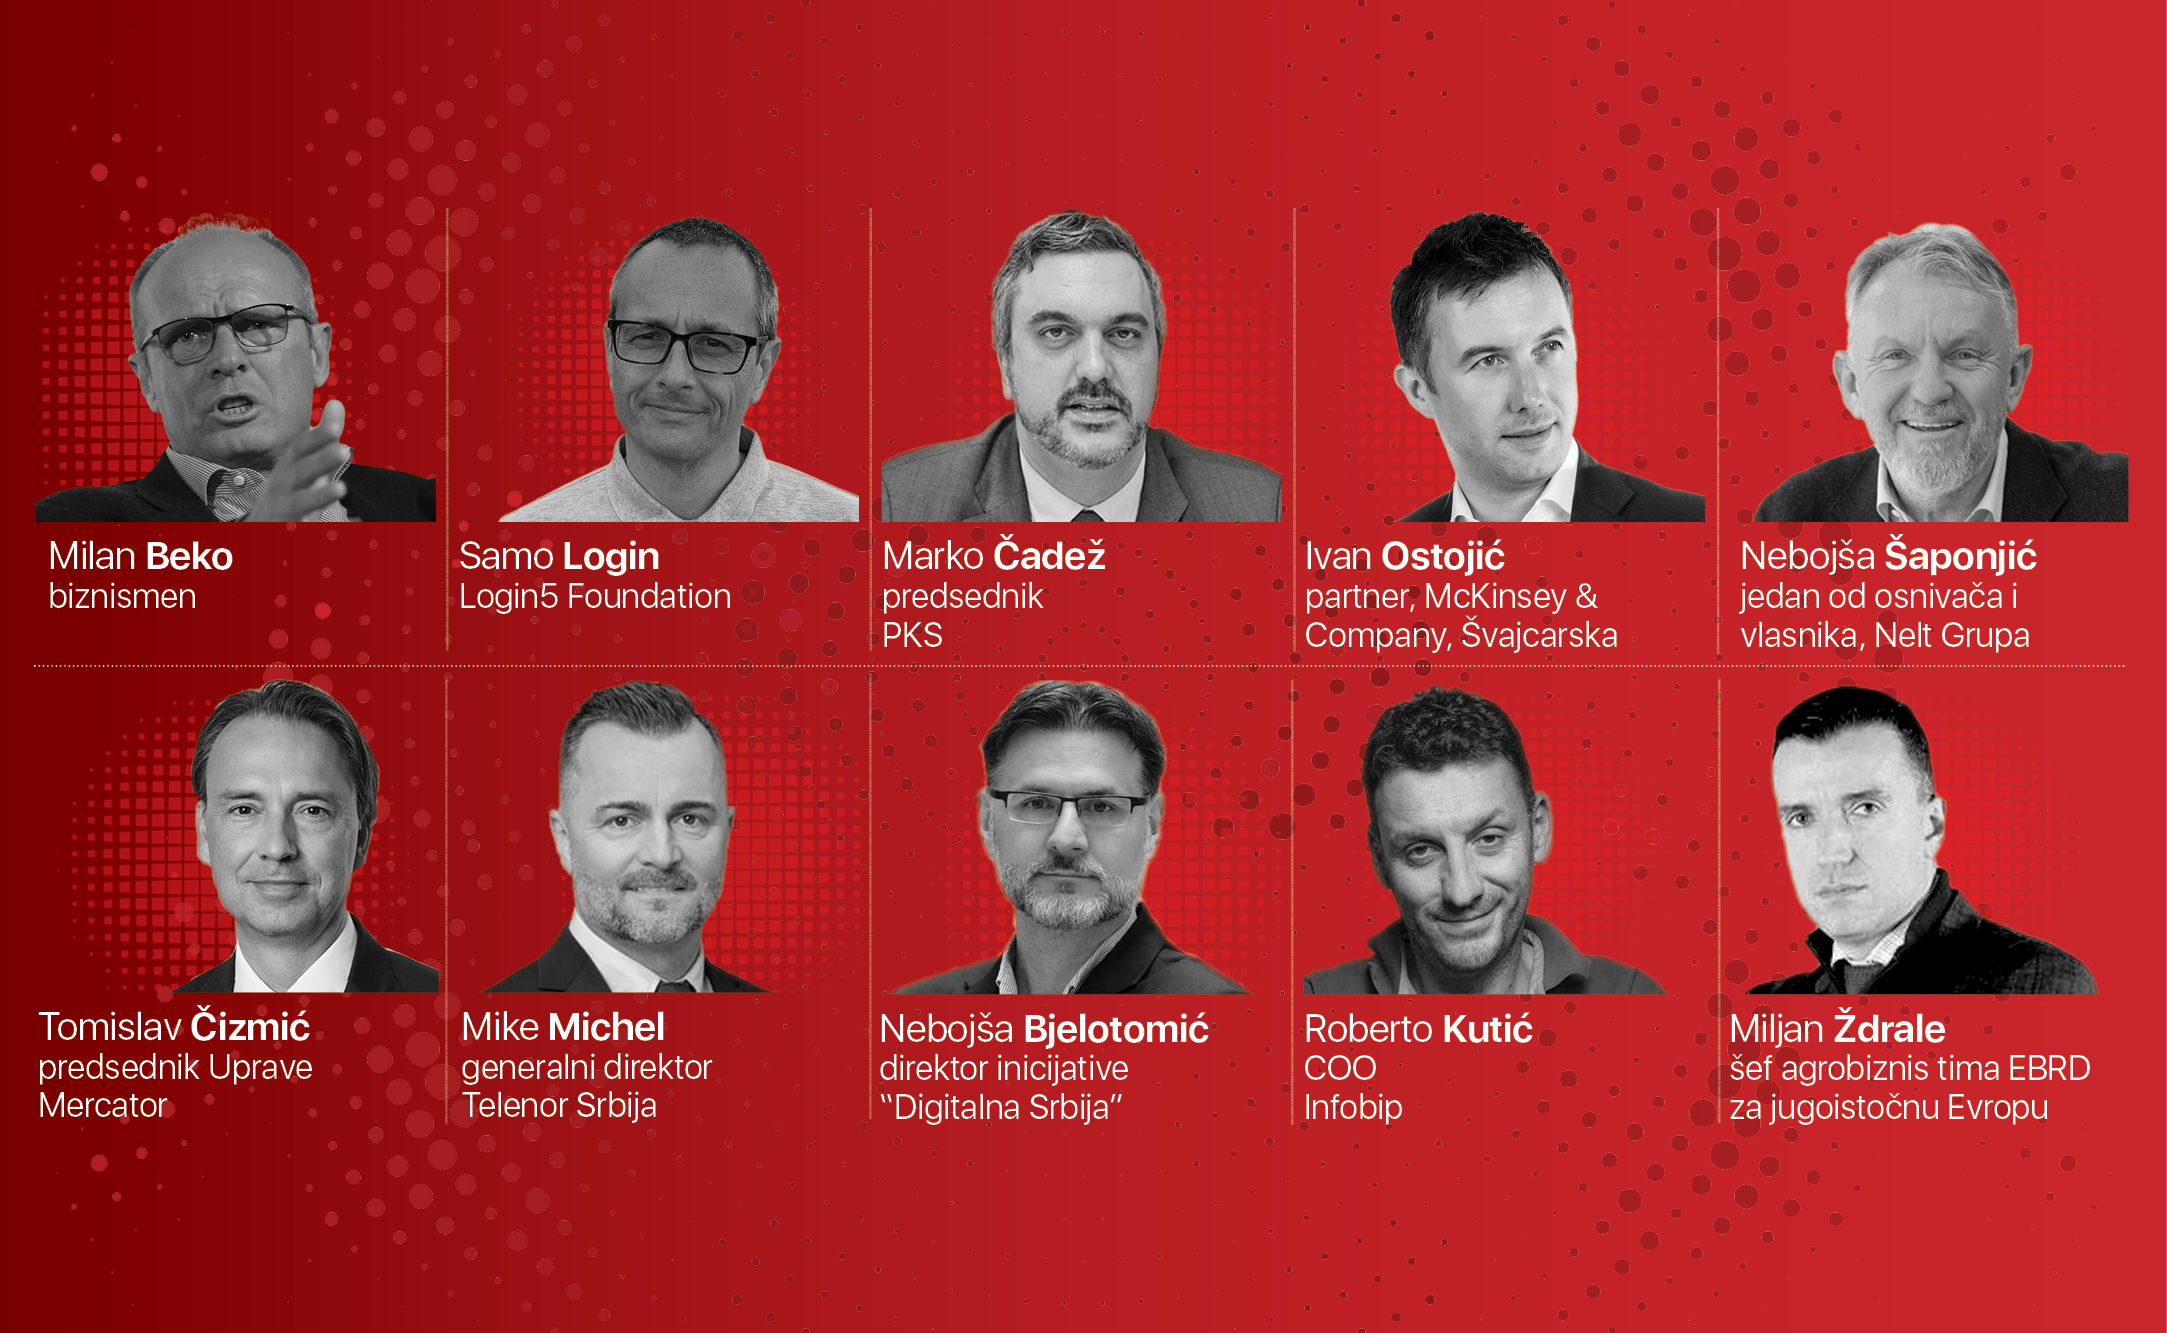 CEO Summit - 15 vizionara 1. decembra u Beogradu!